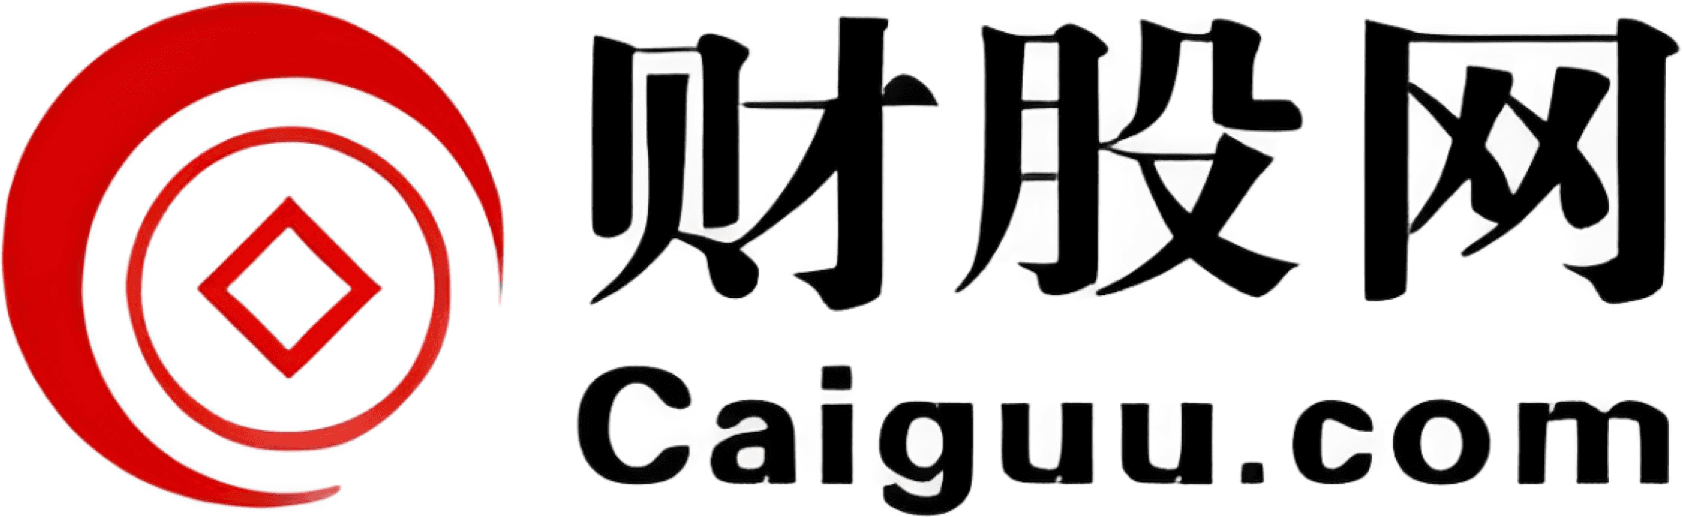 Caiguu.com